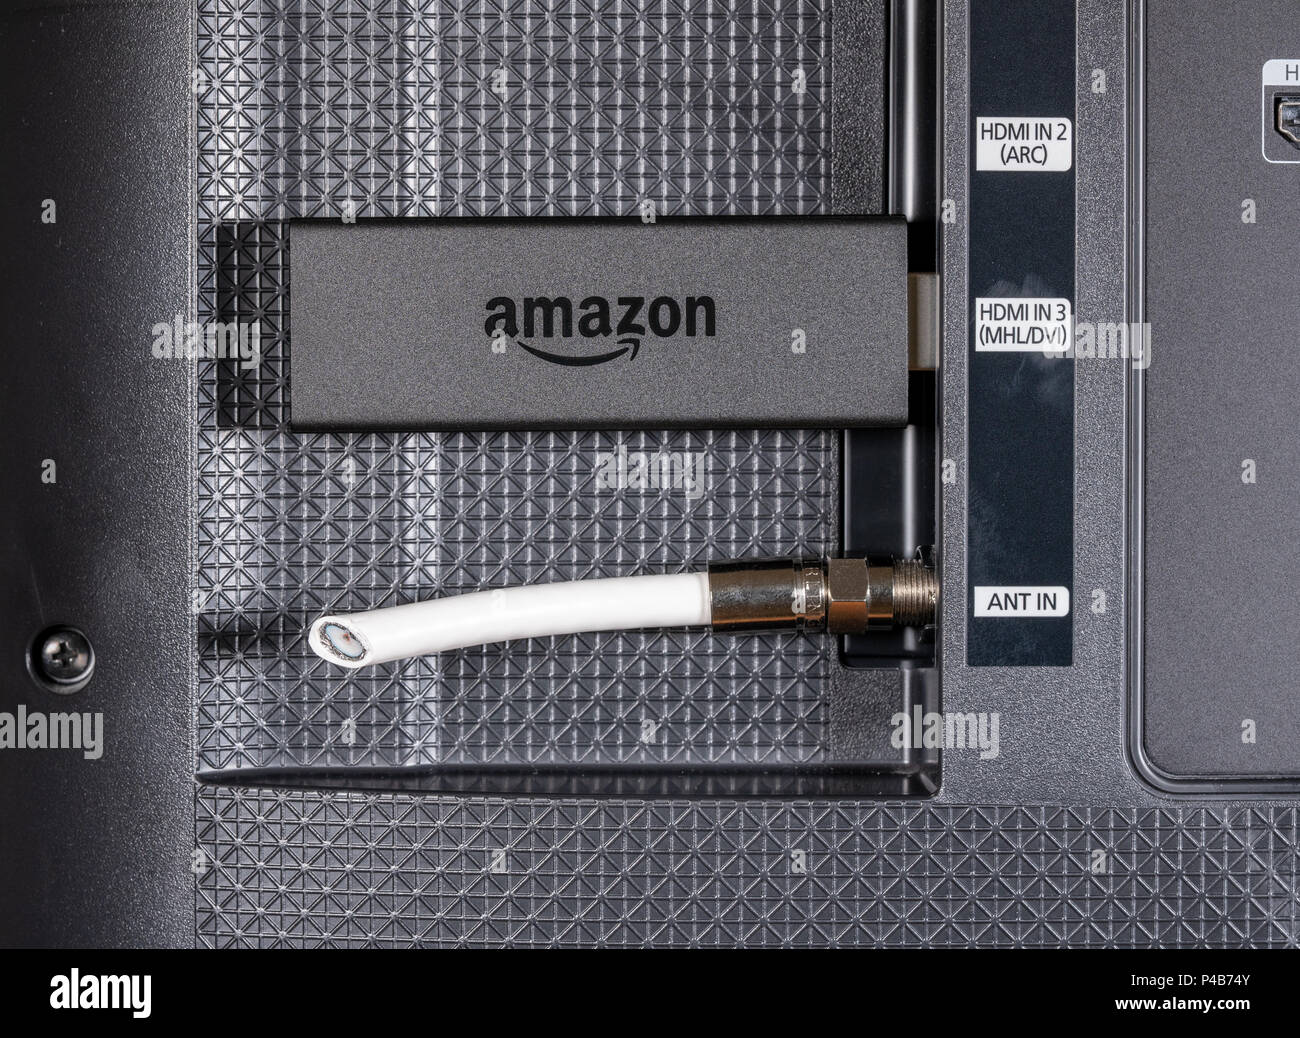 Amazon Feuer-TV Streaming Stick durch Ausschneiden Antenne Kabel  Stockfotografie - Alamy